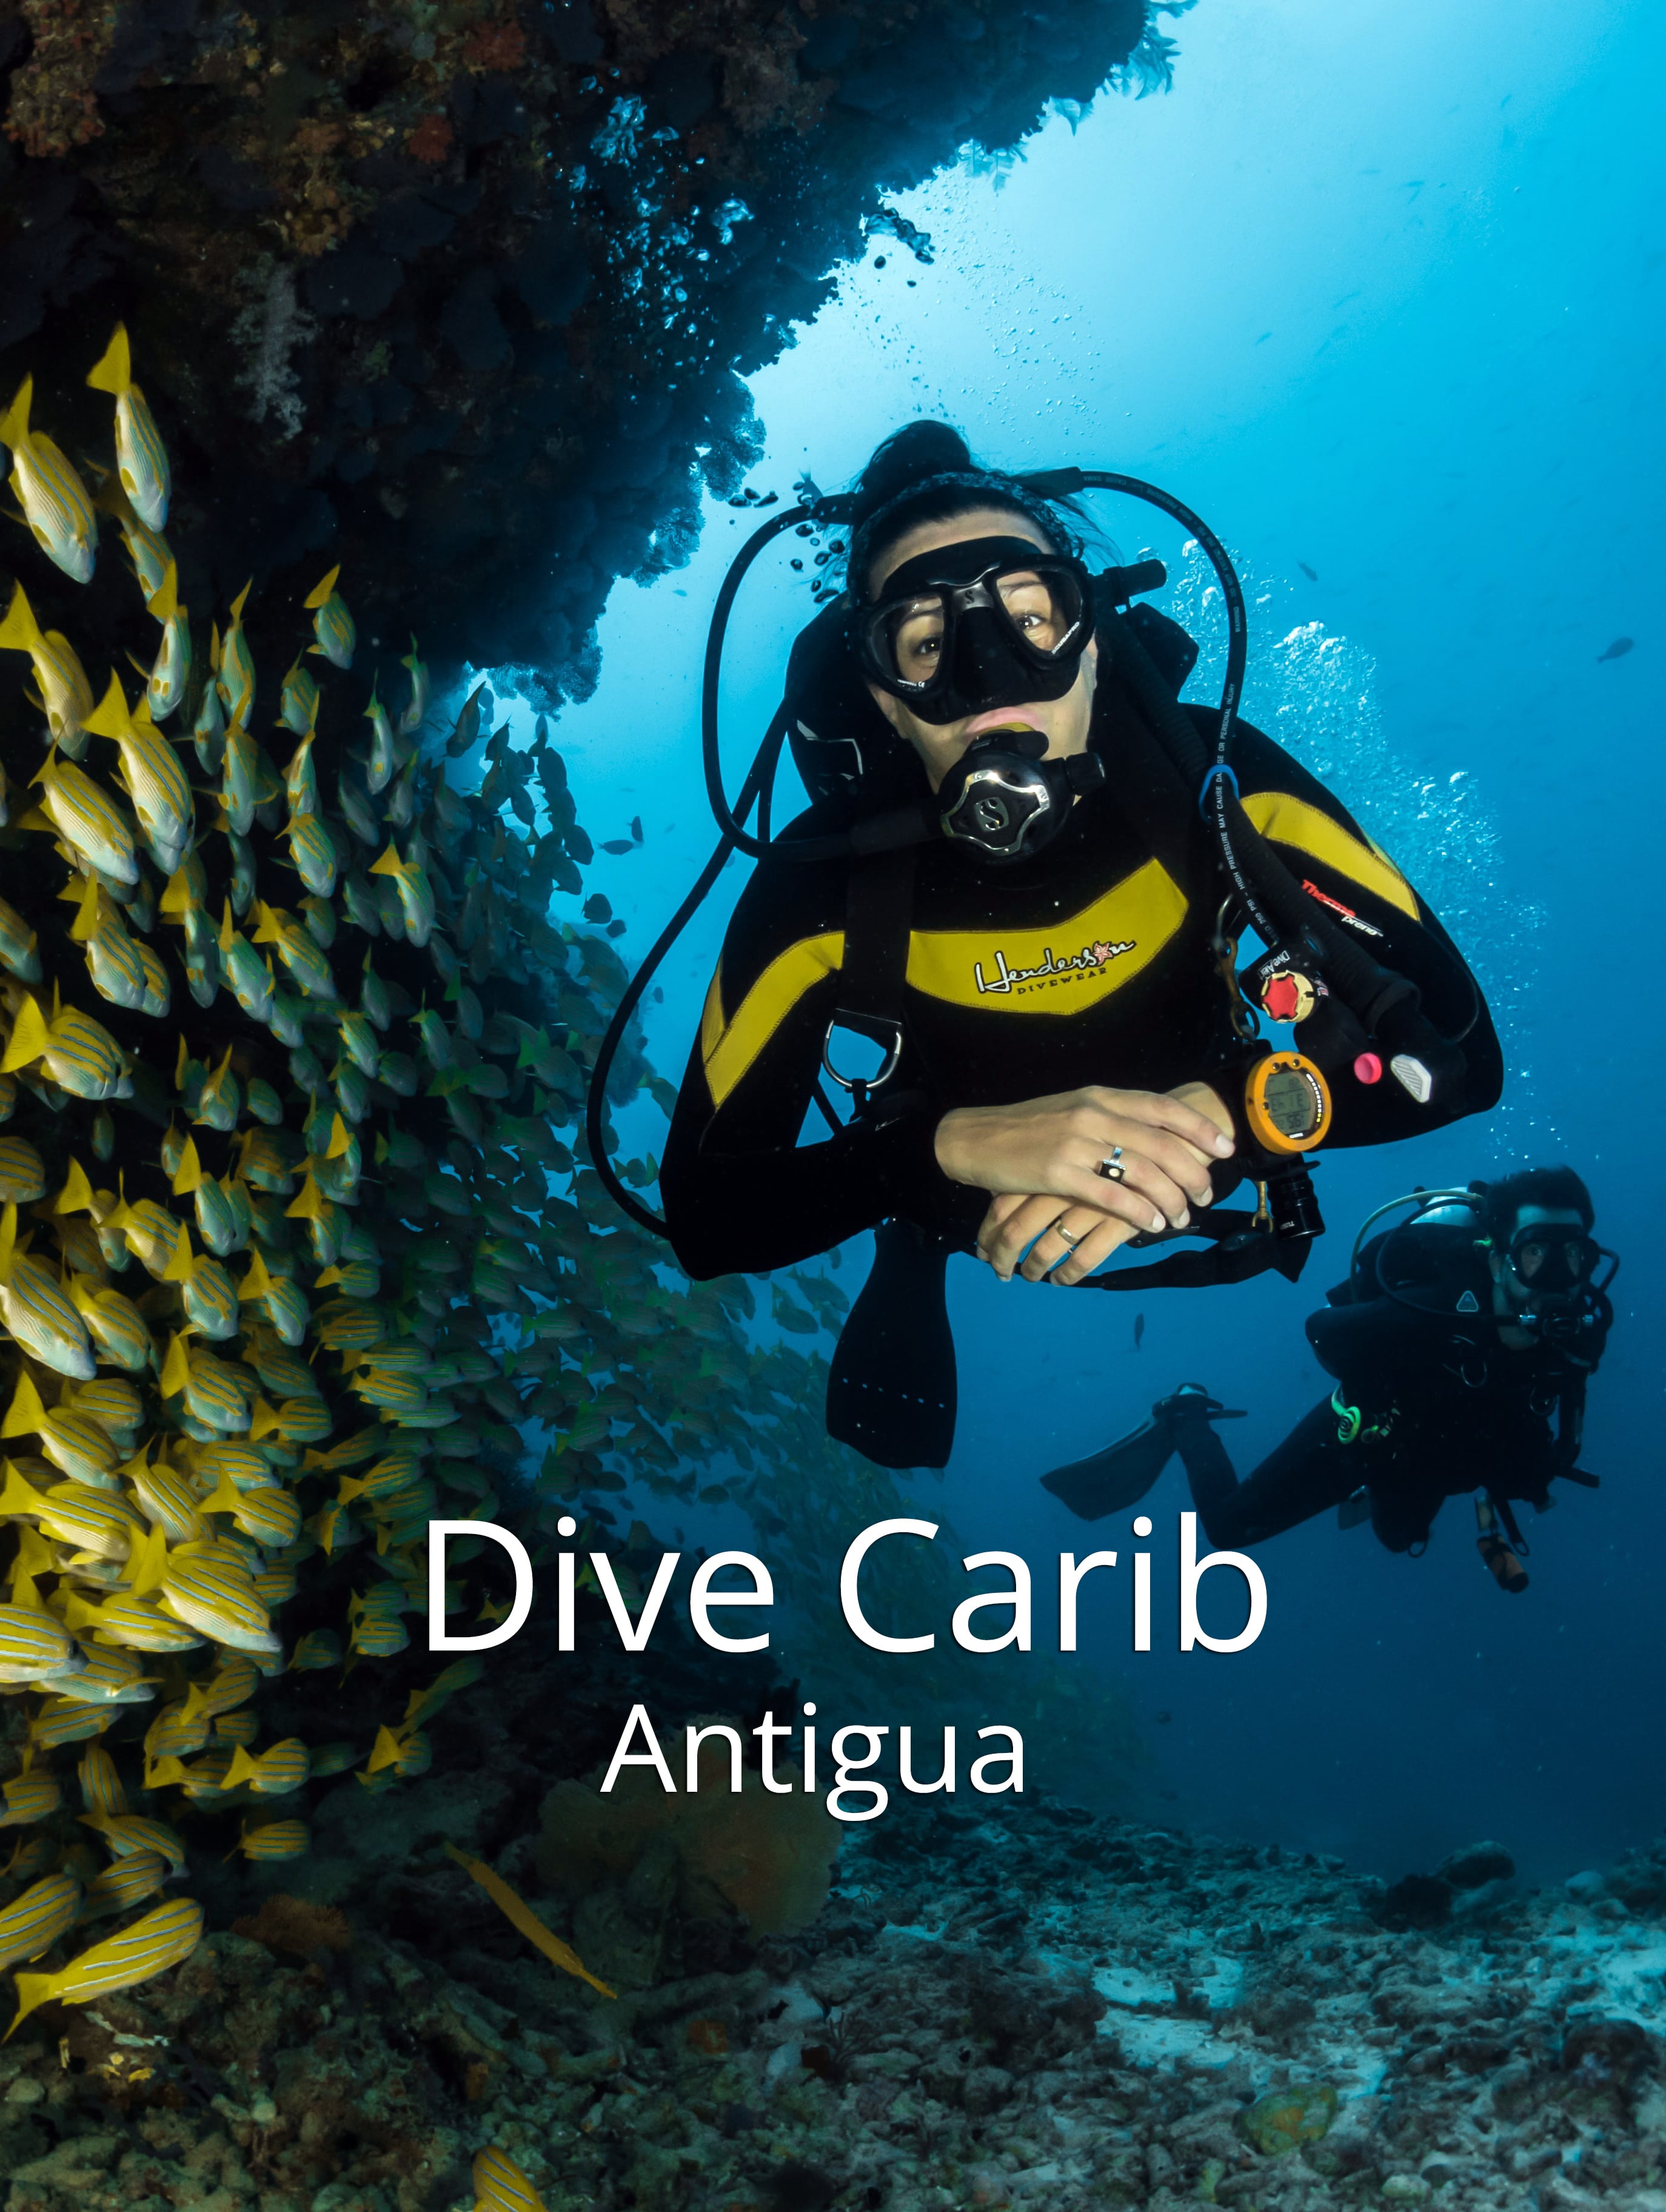 DiveCarib Antigua The Scuba Directory